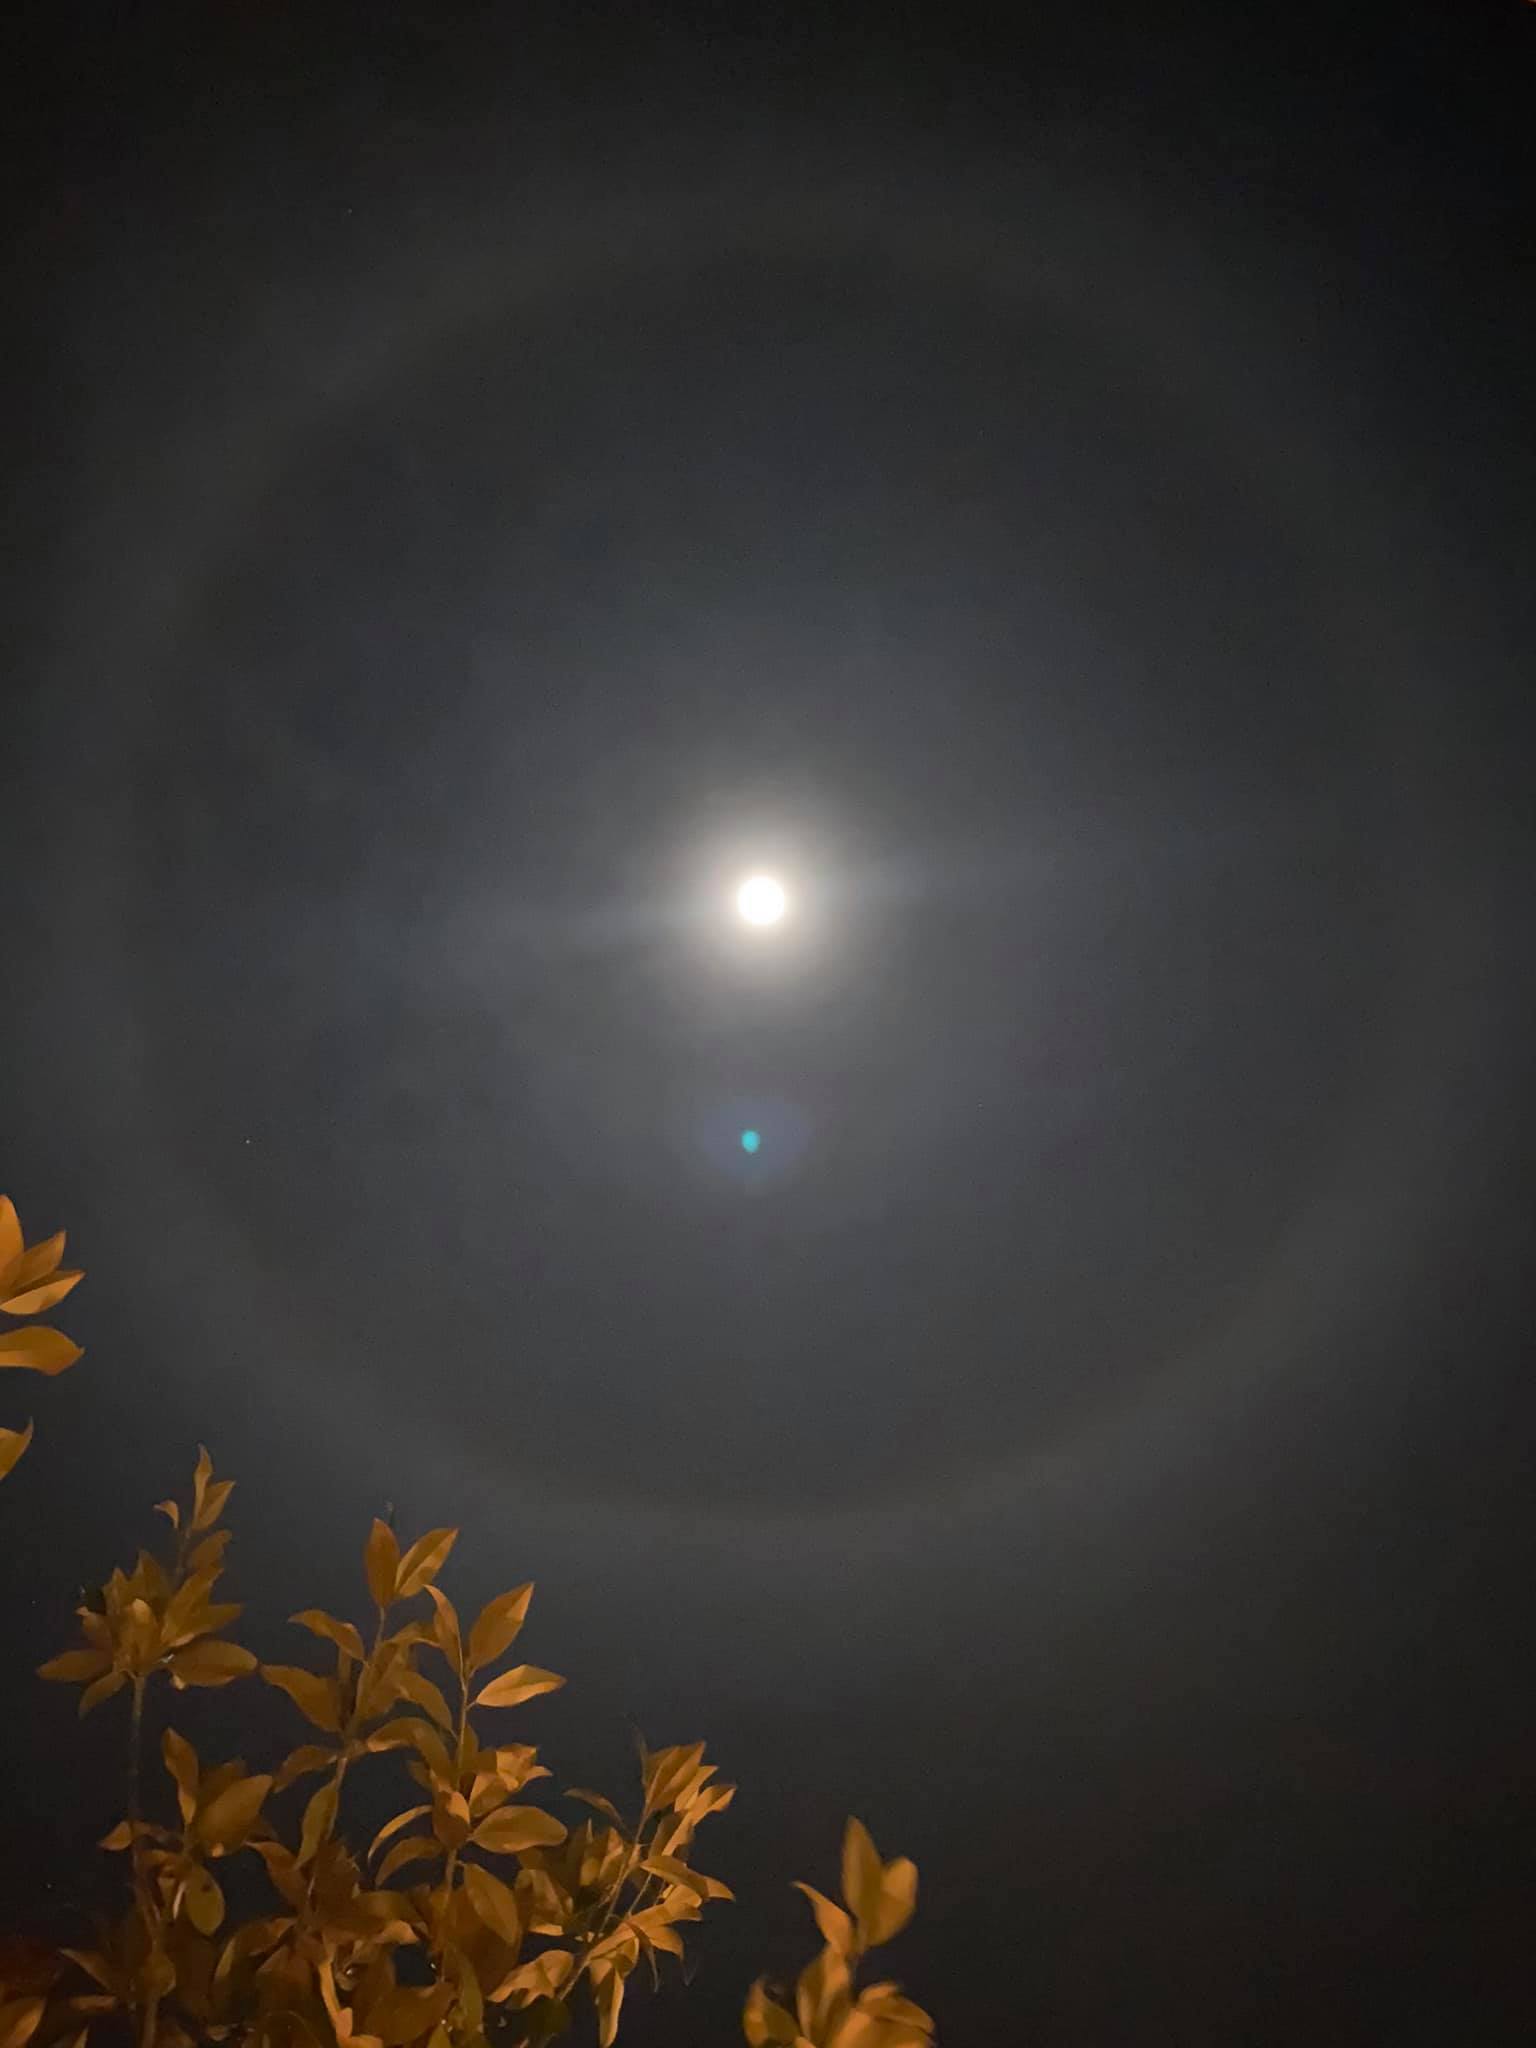 Εύβοια Σεληνιακή άλως: Το φεγγάρι «καλύπτεται» από ένα φωτεινό στεφάνι -Εντυπωσιακές εικόνες